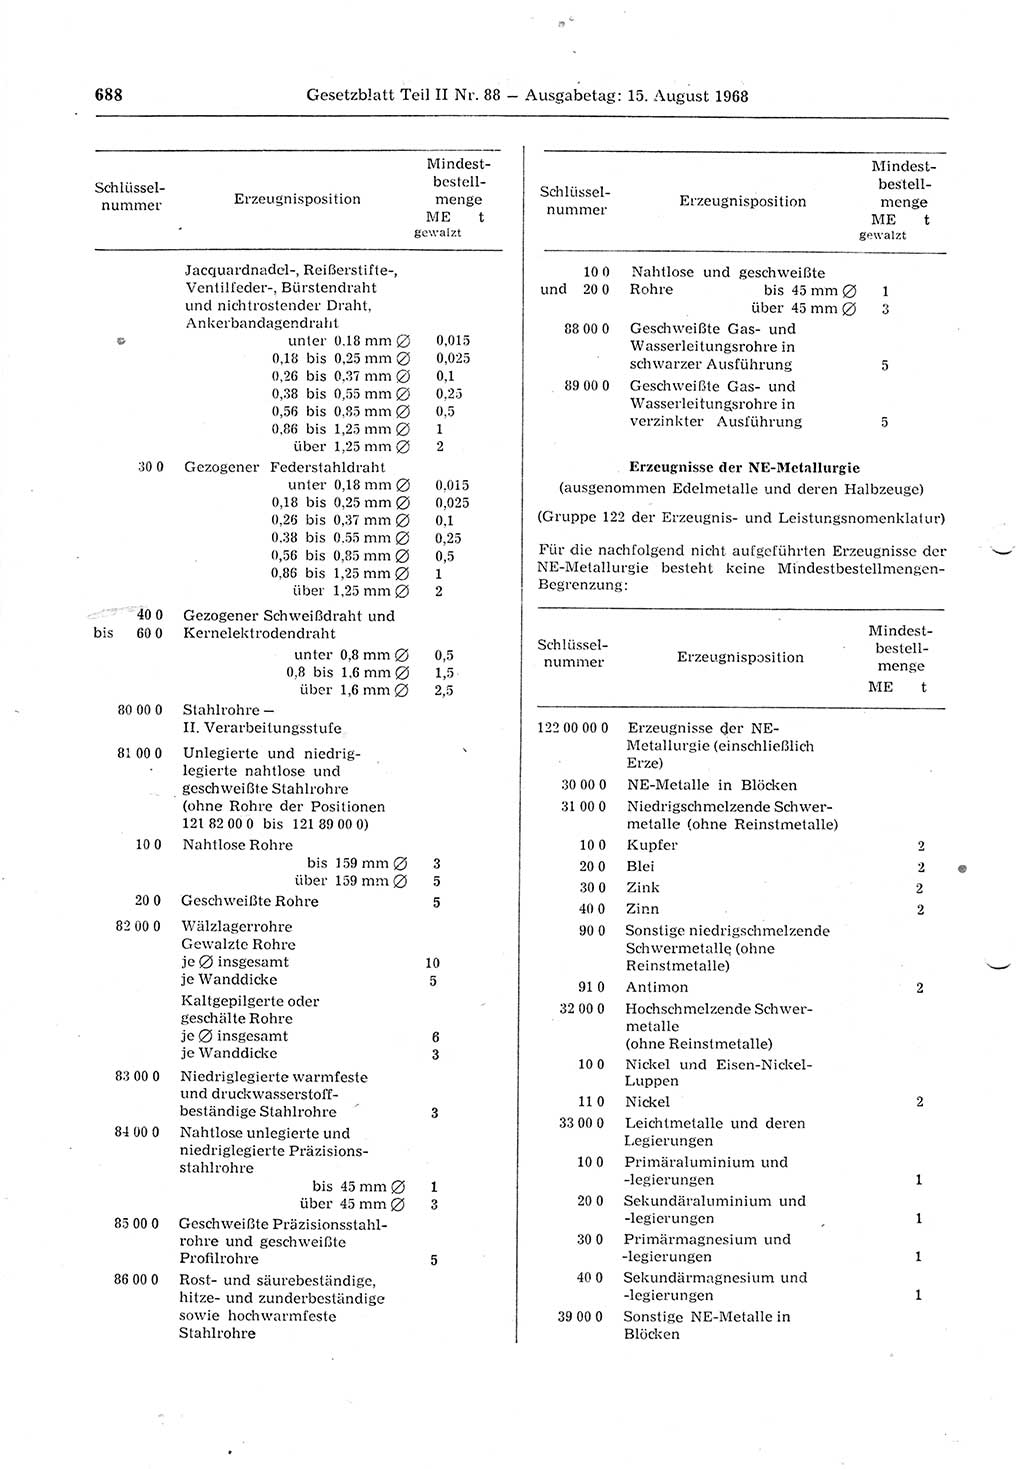 Gesetzblatt (GBl.) der Deutschen Demokratischen Republik (DDR) Teil ⅠⅠ 1968, Seite 688 (GBl. DDR ⅠⅠ 1968, S. 688)